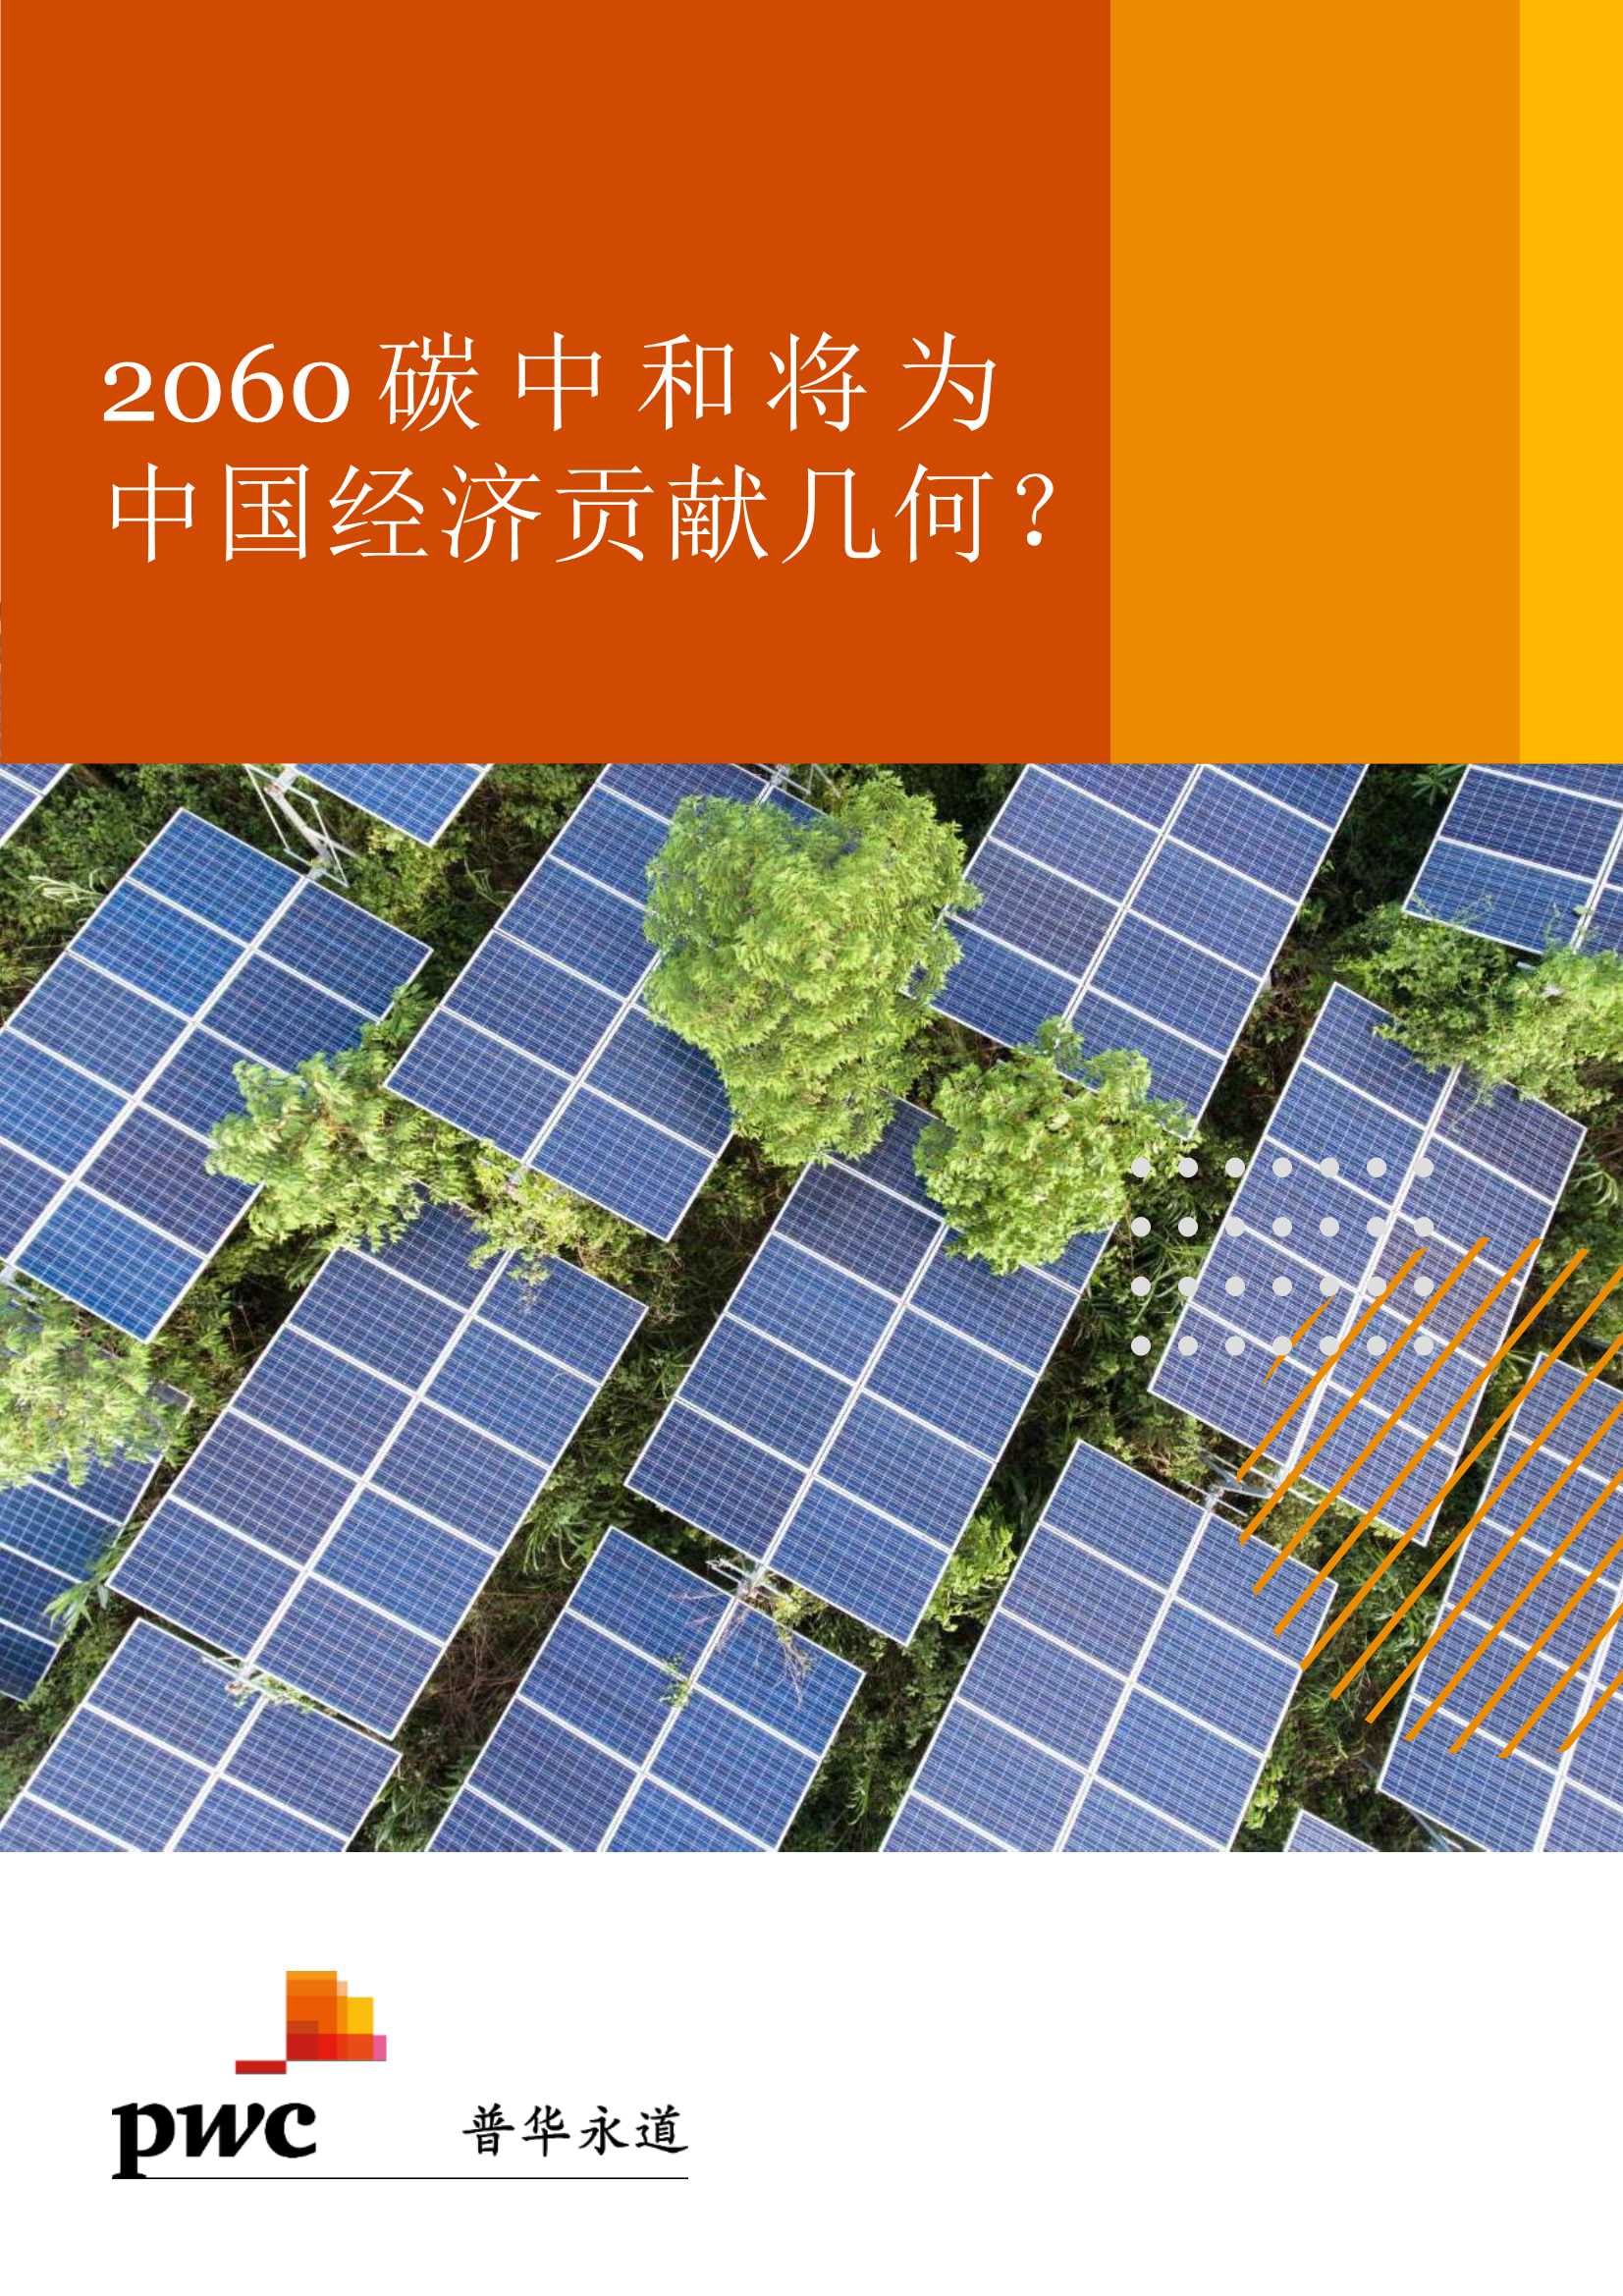 普华永道-2060碳中和将为中国经济贡献几何？-2021.06-14页